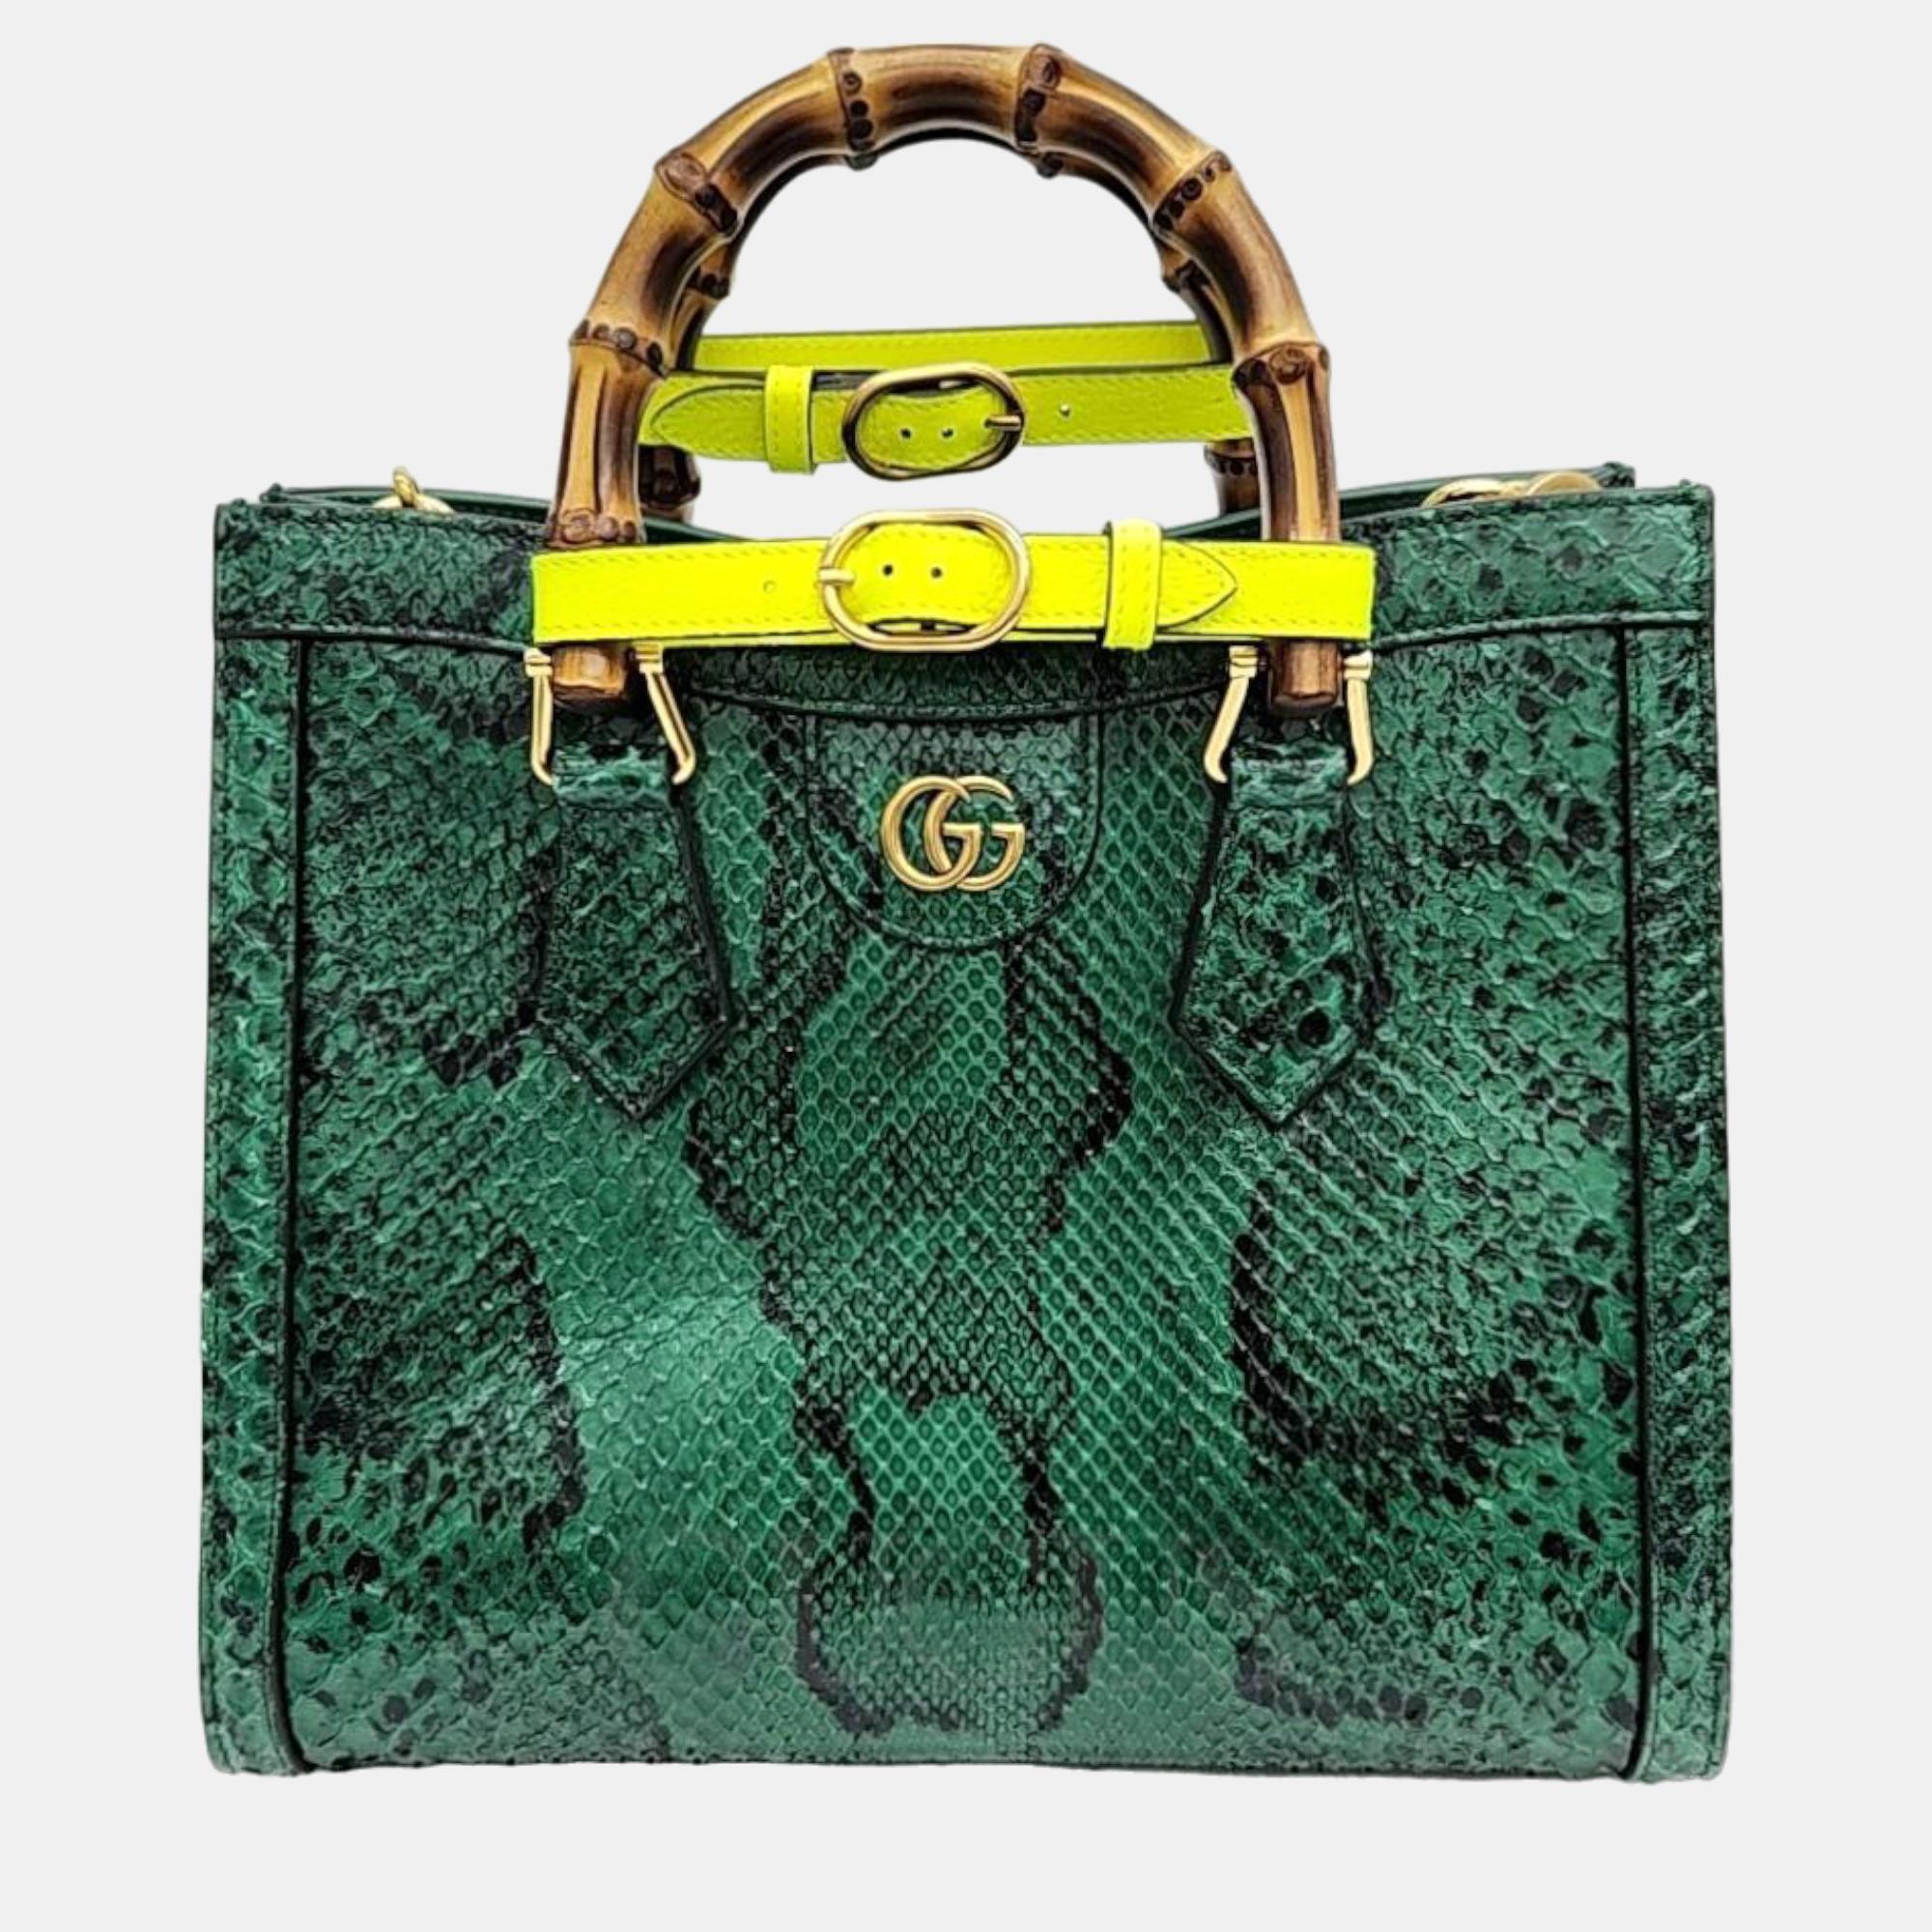 Gucci python diana bamboo tote bag small (660195)